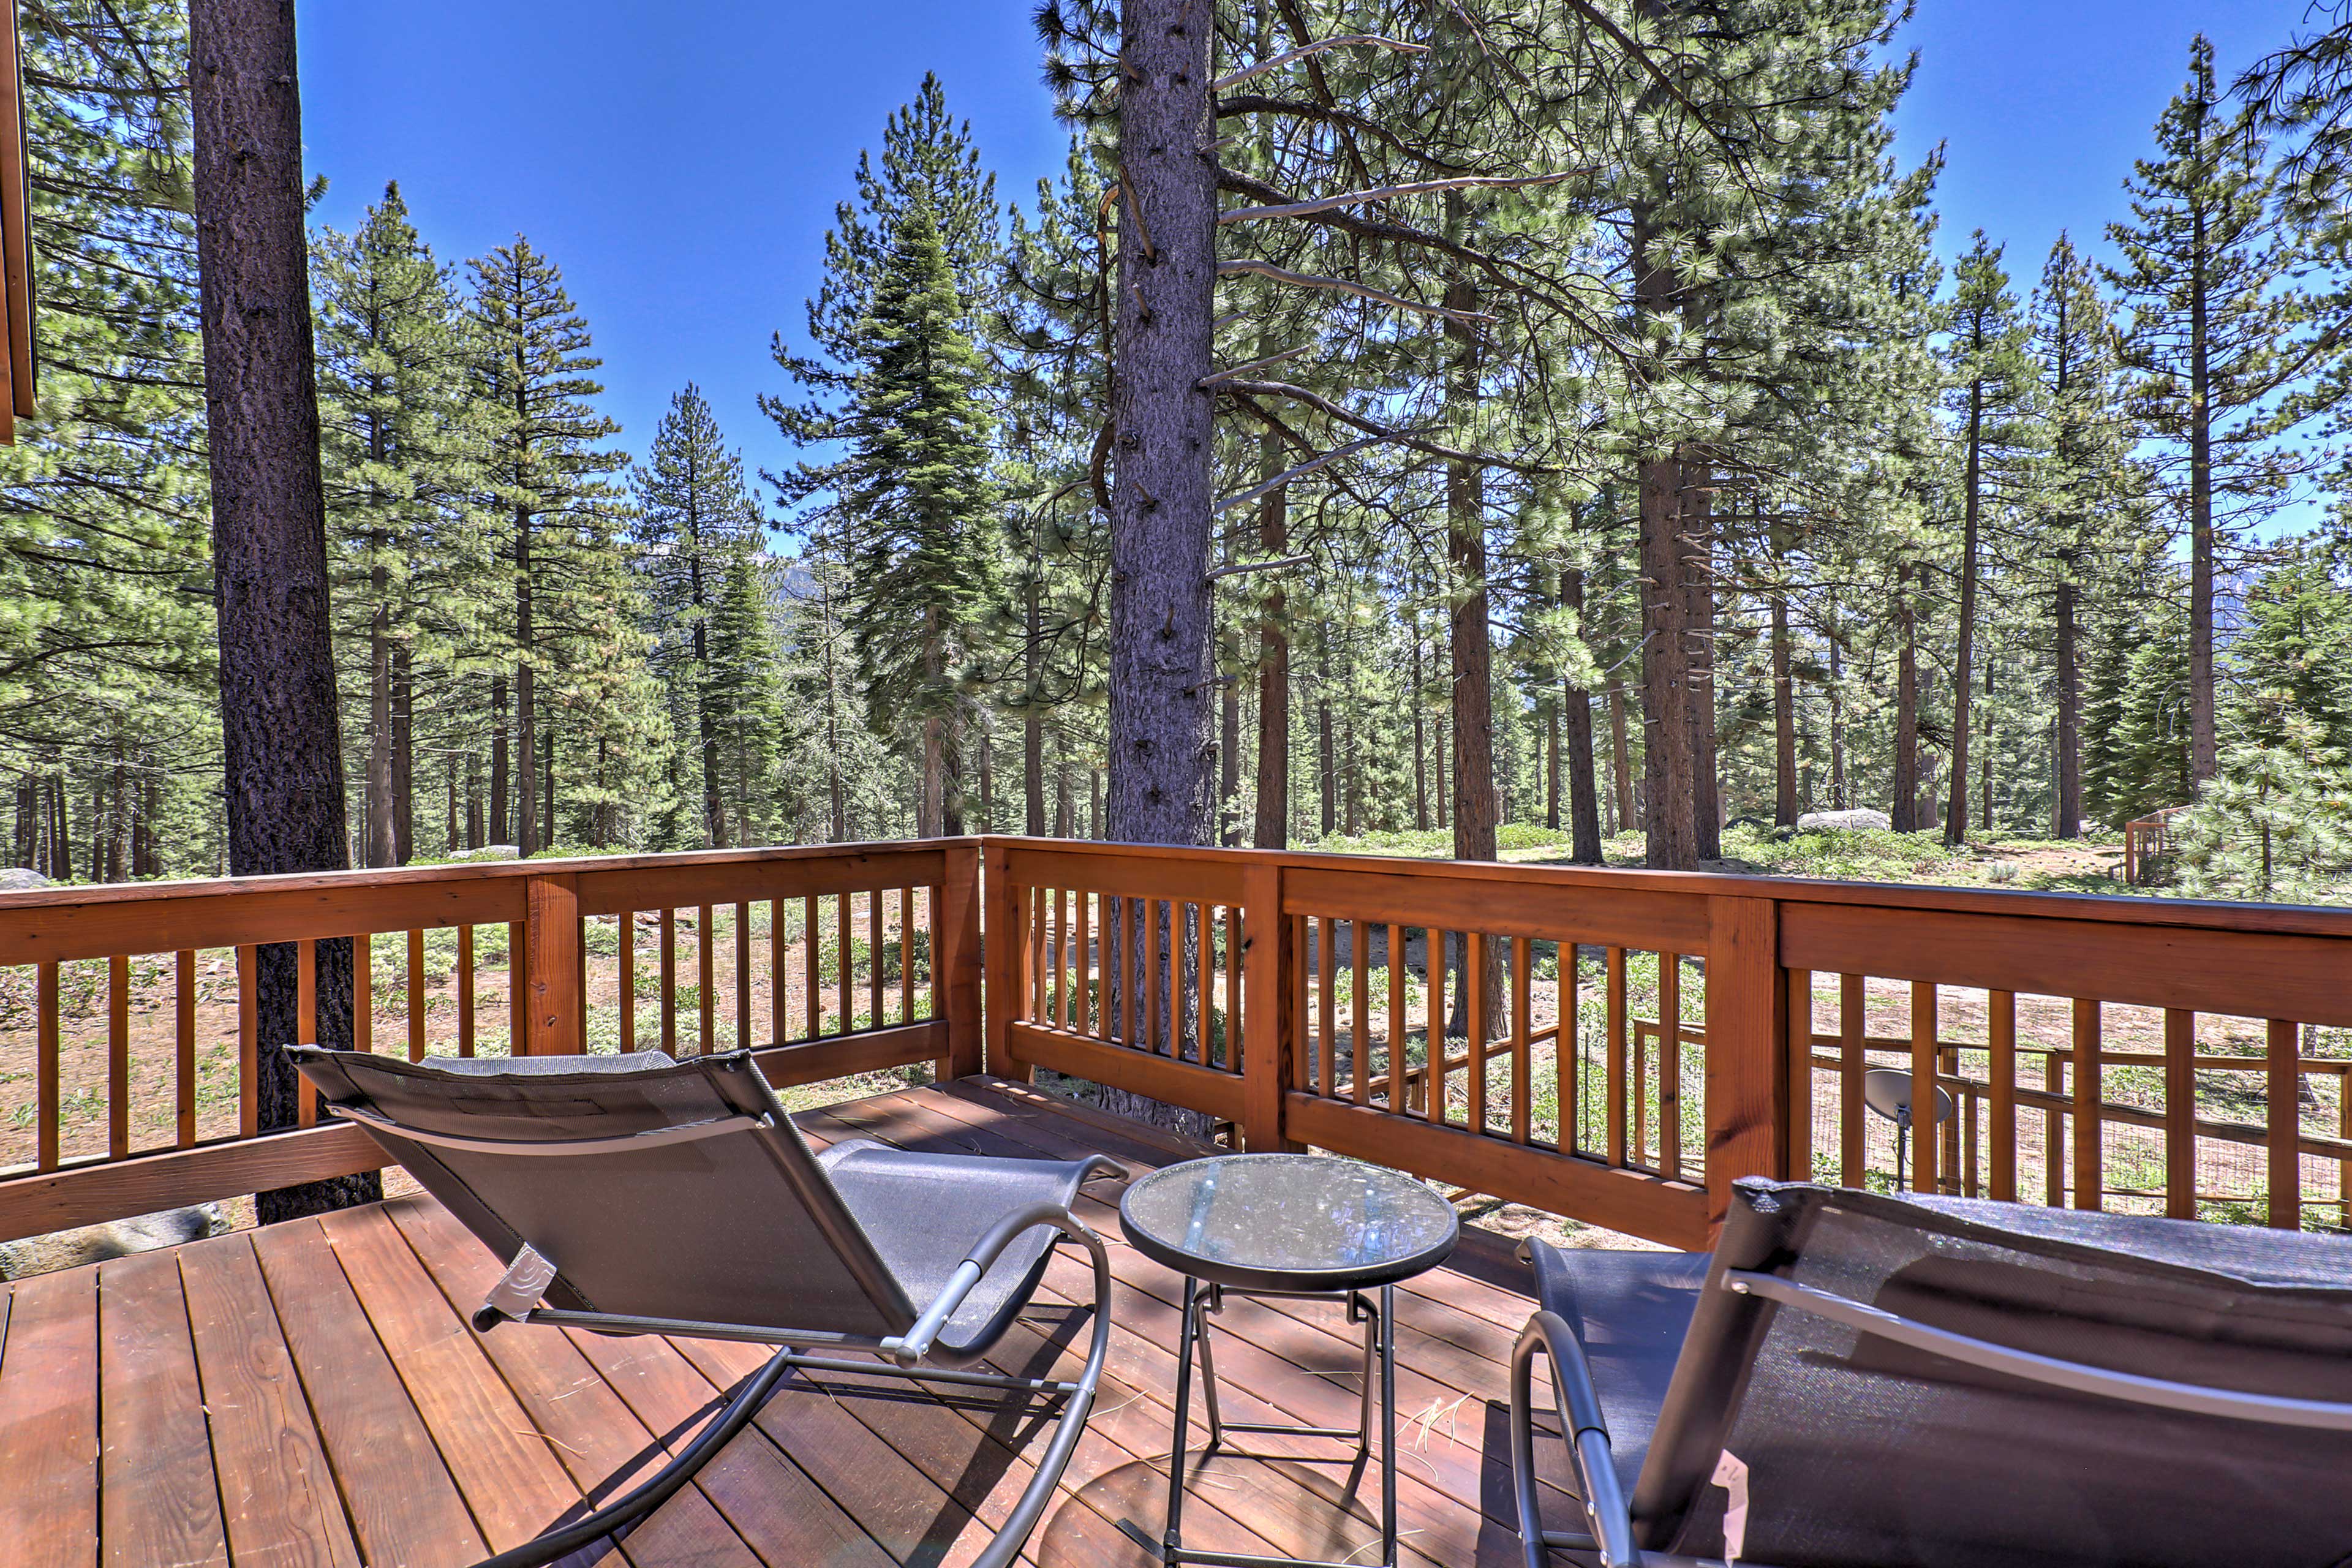 A fun retreat awaits at this 4-bedroom, 3-bath South Lake Tahoe vacation rental!